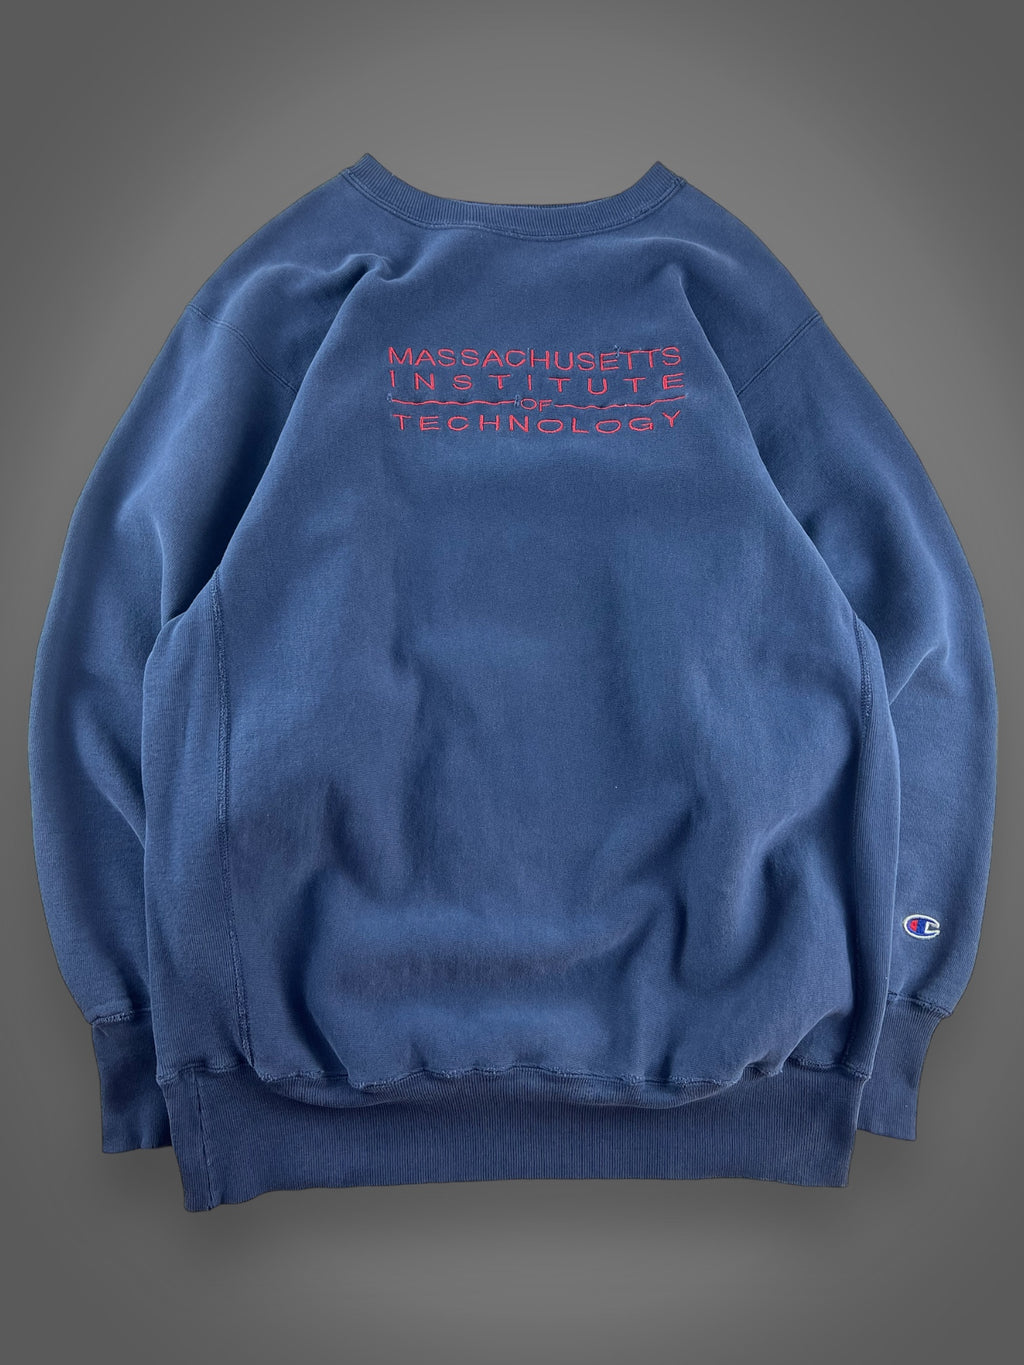 90s Champion MIT reverse weave sweatshirt fits XL